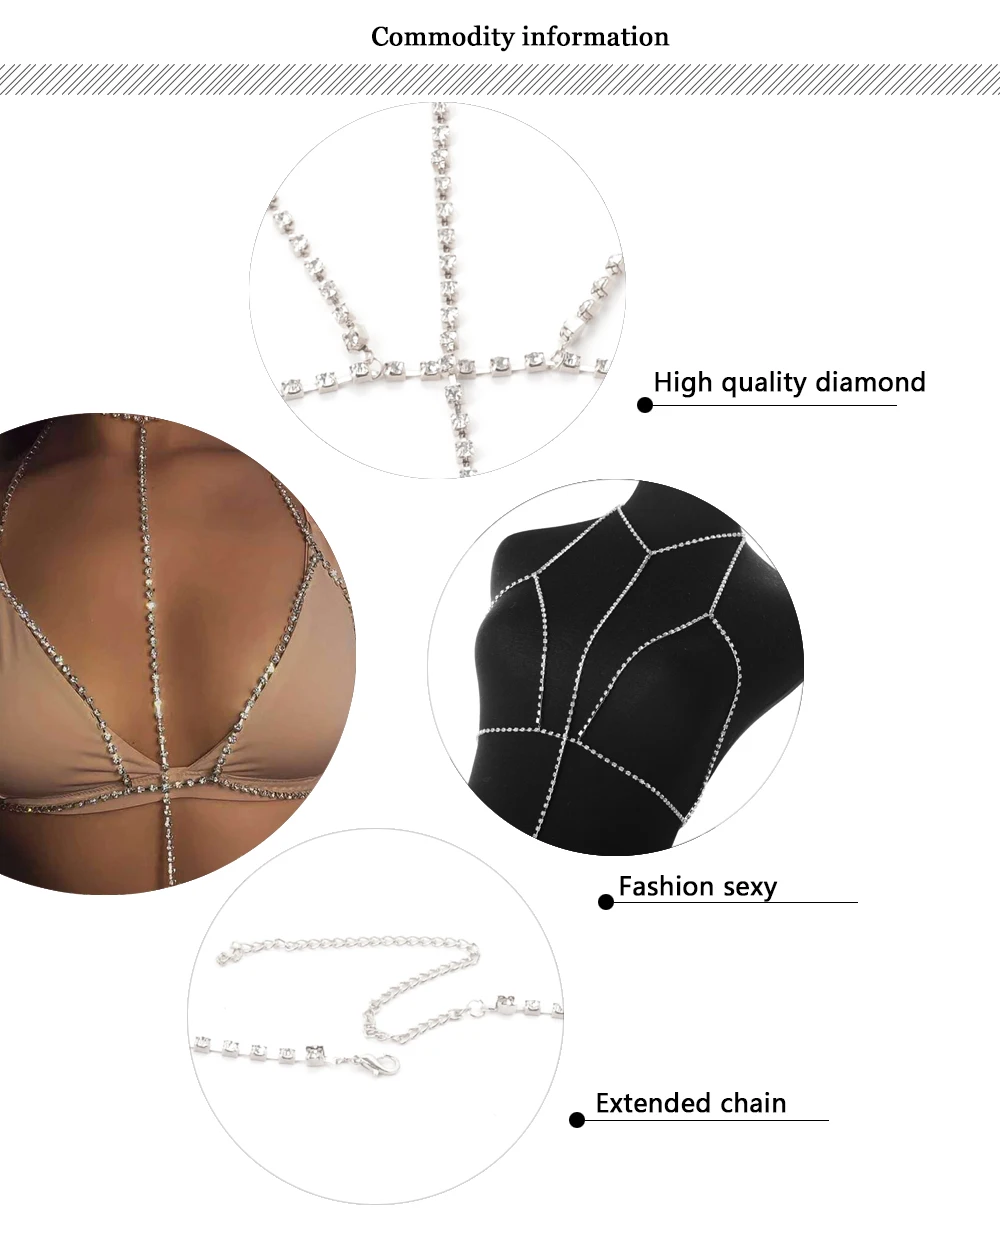 HTB1kVJURXXXXXaZapXXq6xXFXXXT Sexy Crystal Bra Harness Body Chain | Women's Rhinestone Choker Necklace & Bikini Beach Fashion Body Jewelry